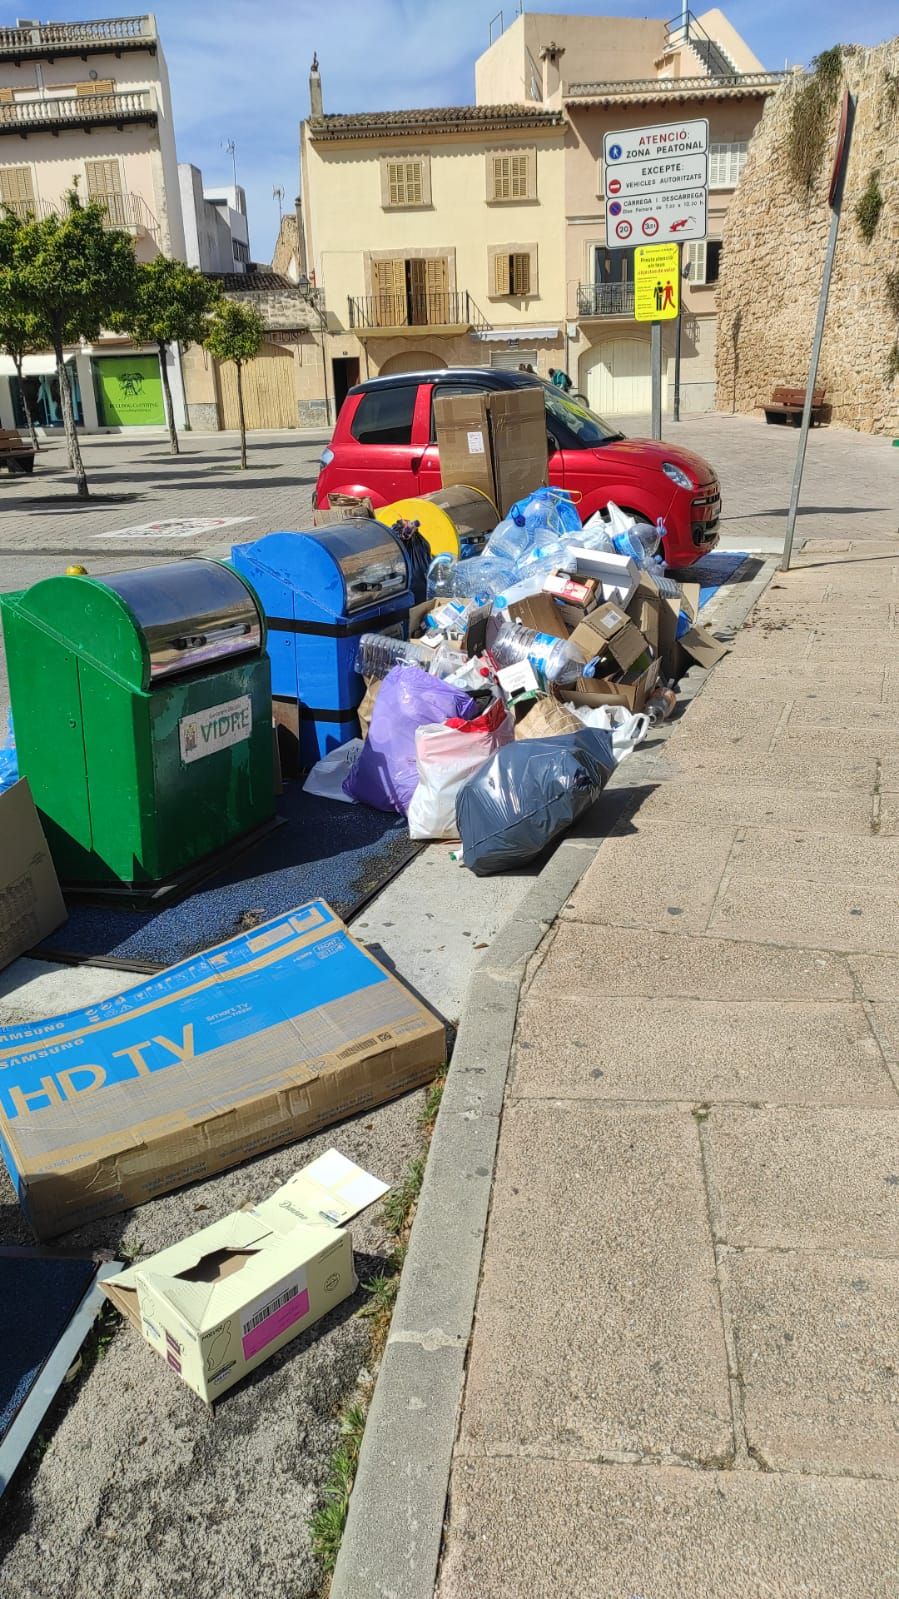 La basura ocupa las calles de Alcúdia y sa Pobla debido a la huelga